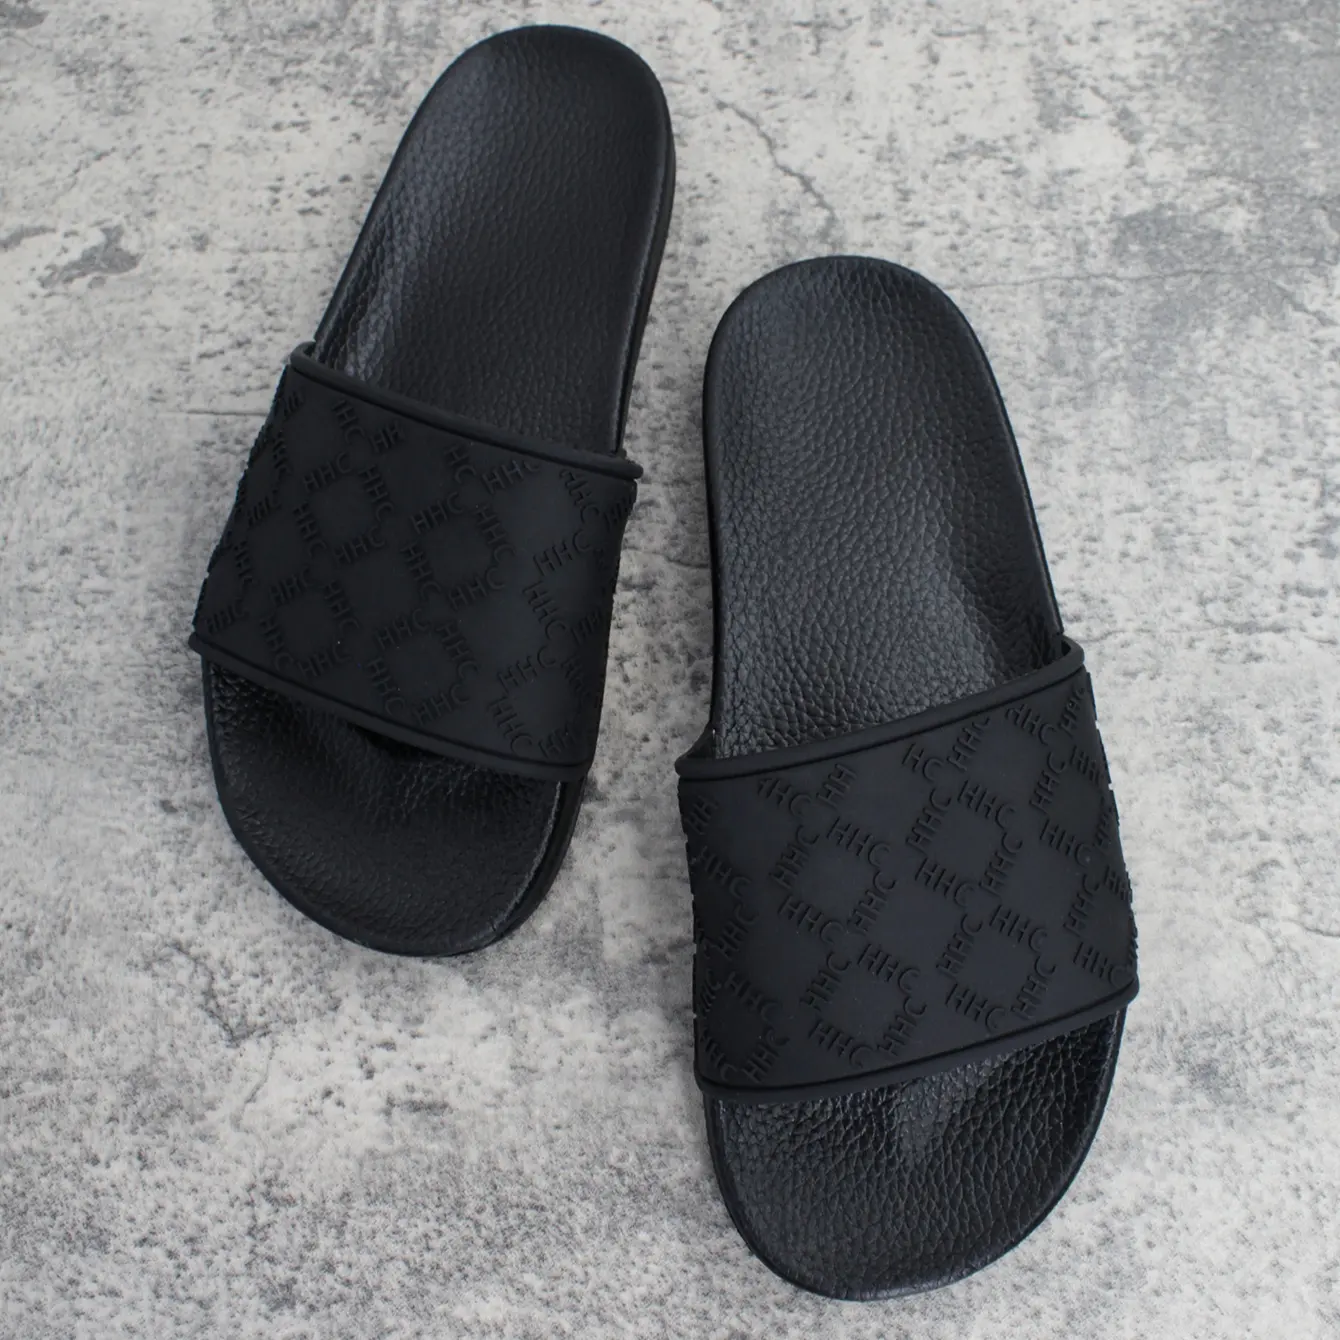 รองเท้าแตะแบบสไลด์ทำจากพีวีซีสำหรับผู้ชายและผู้หญิงสีดำเรียบพิมพ์ลายโลโก้ได้ตามต้องการ